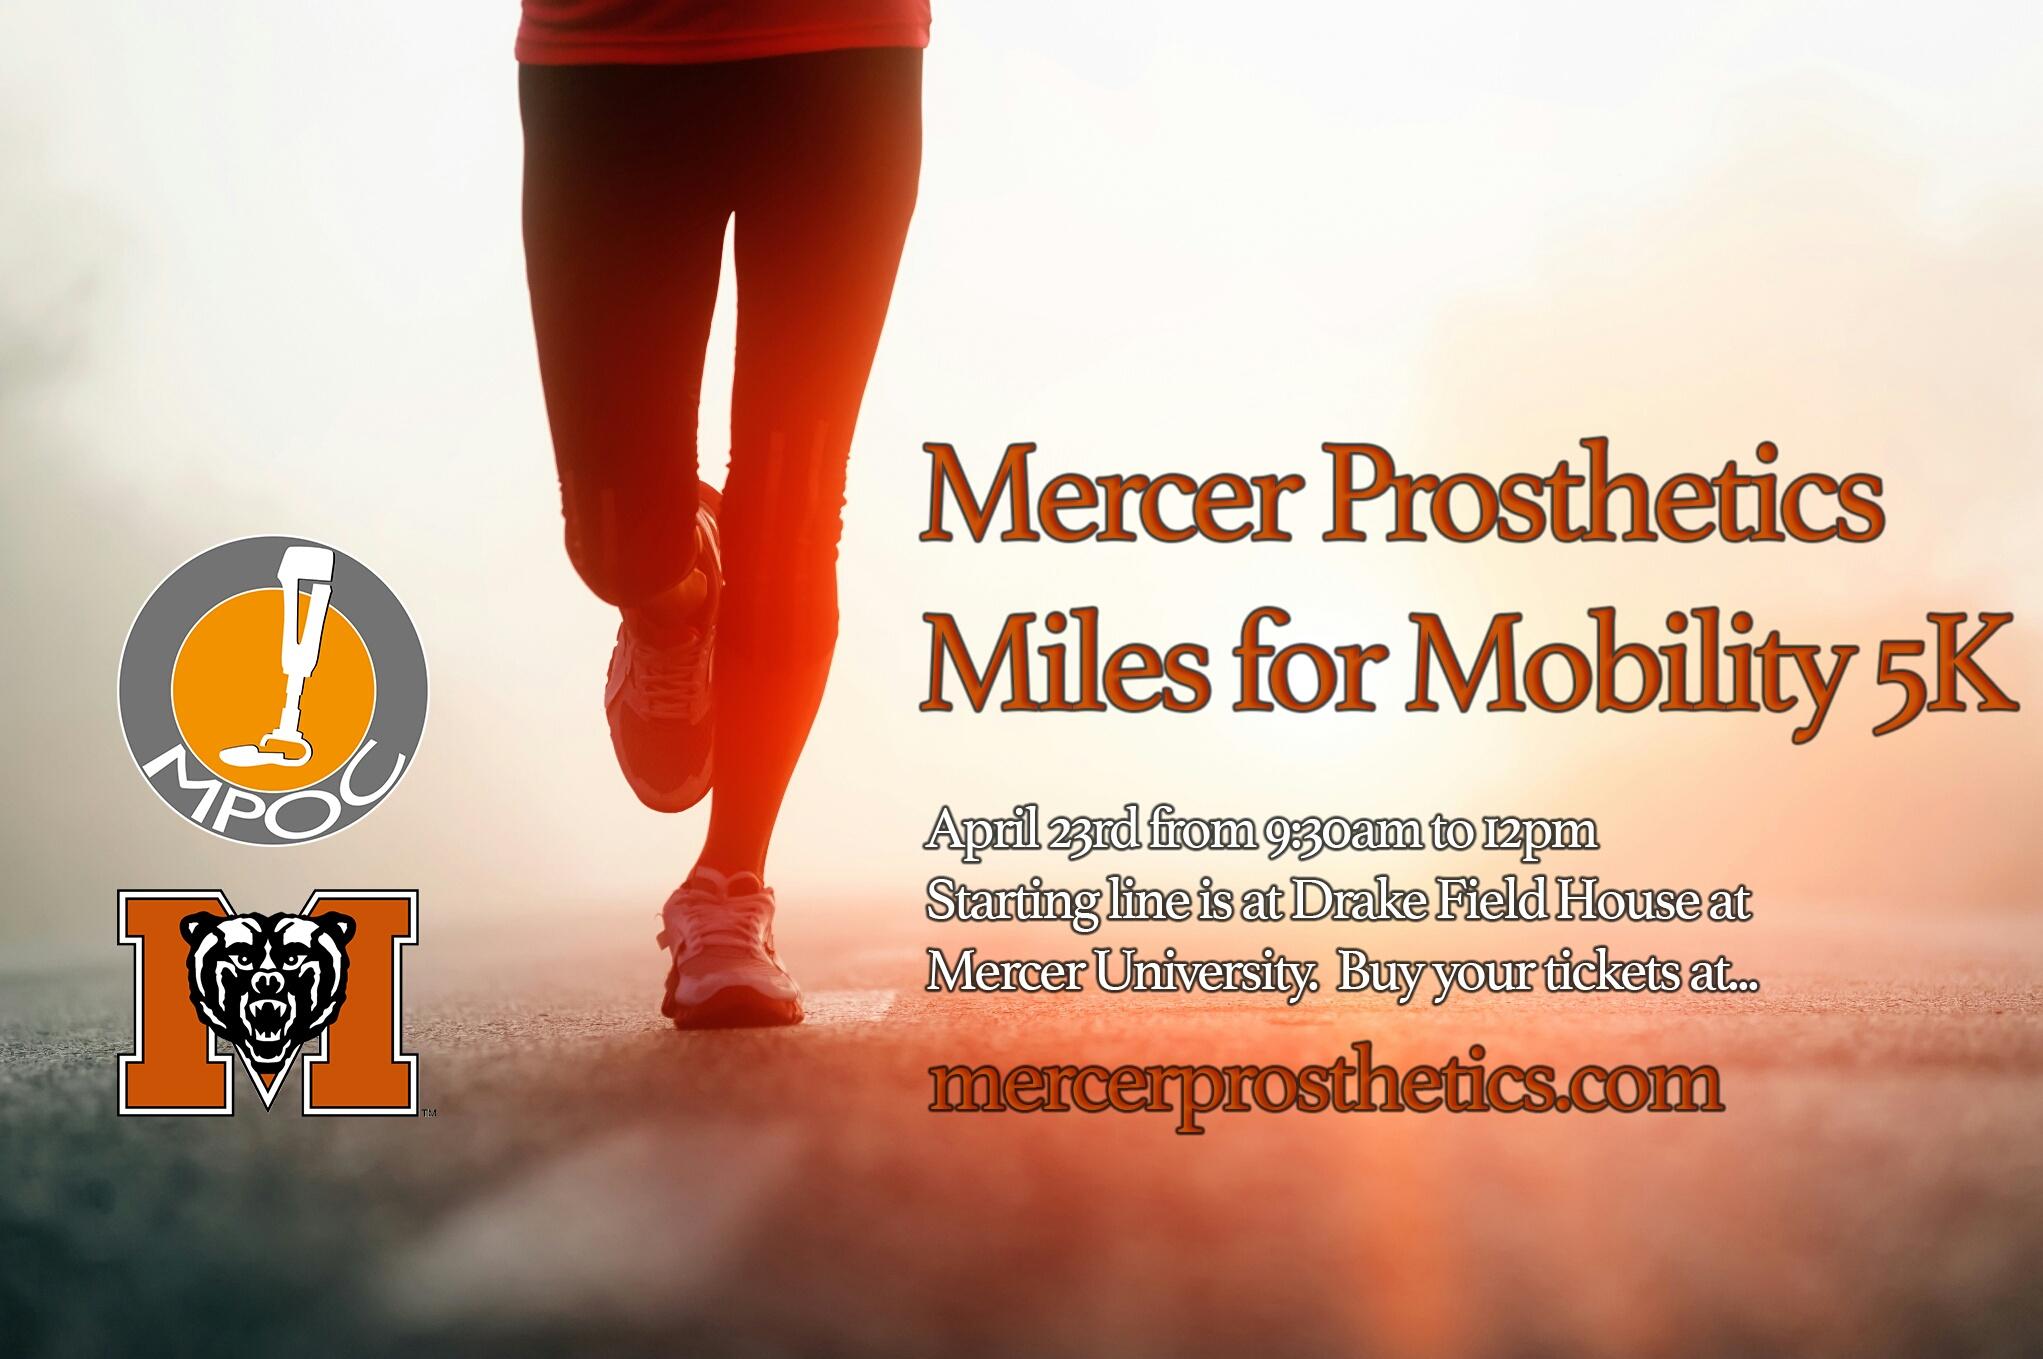 Mercer Prosthetics Miles for Mobility 5K and 3K